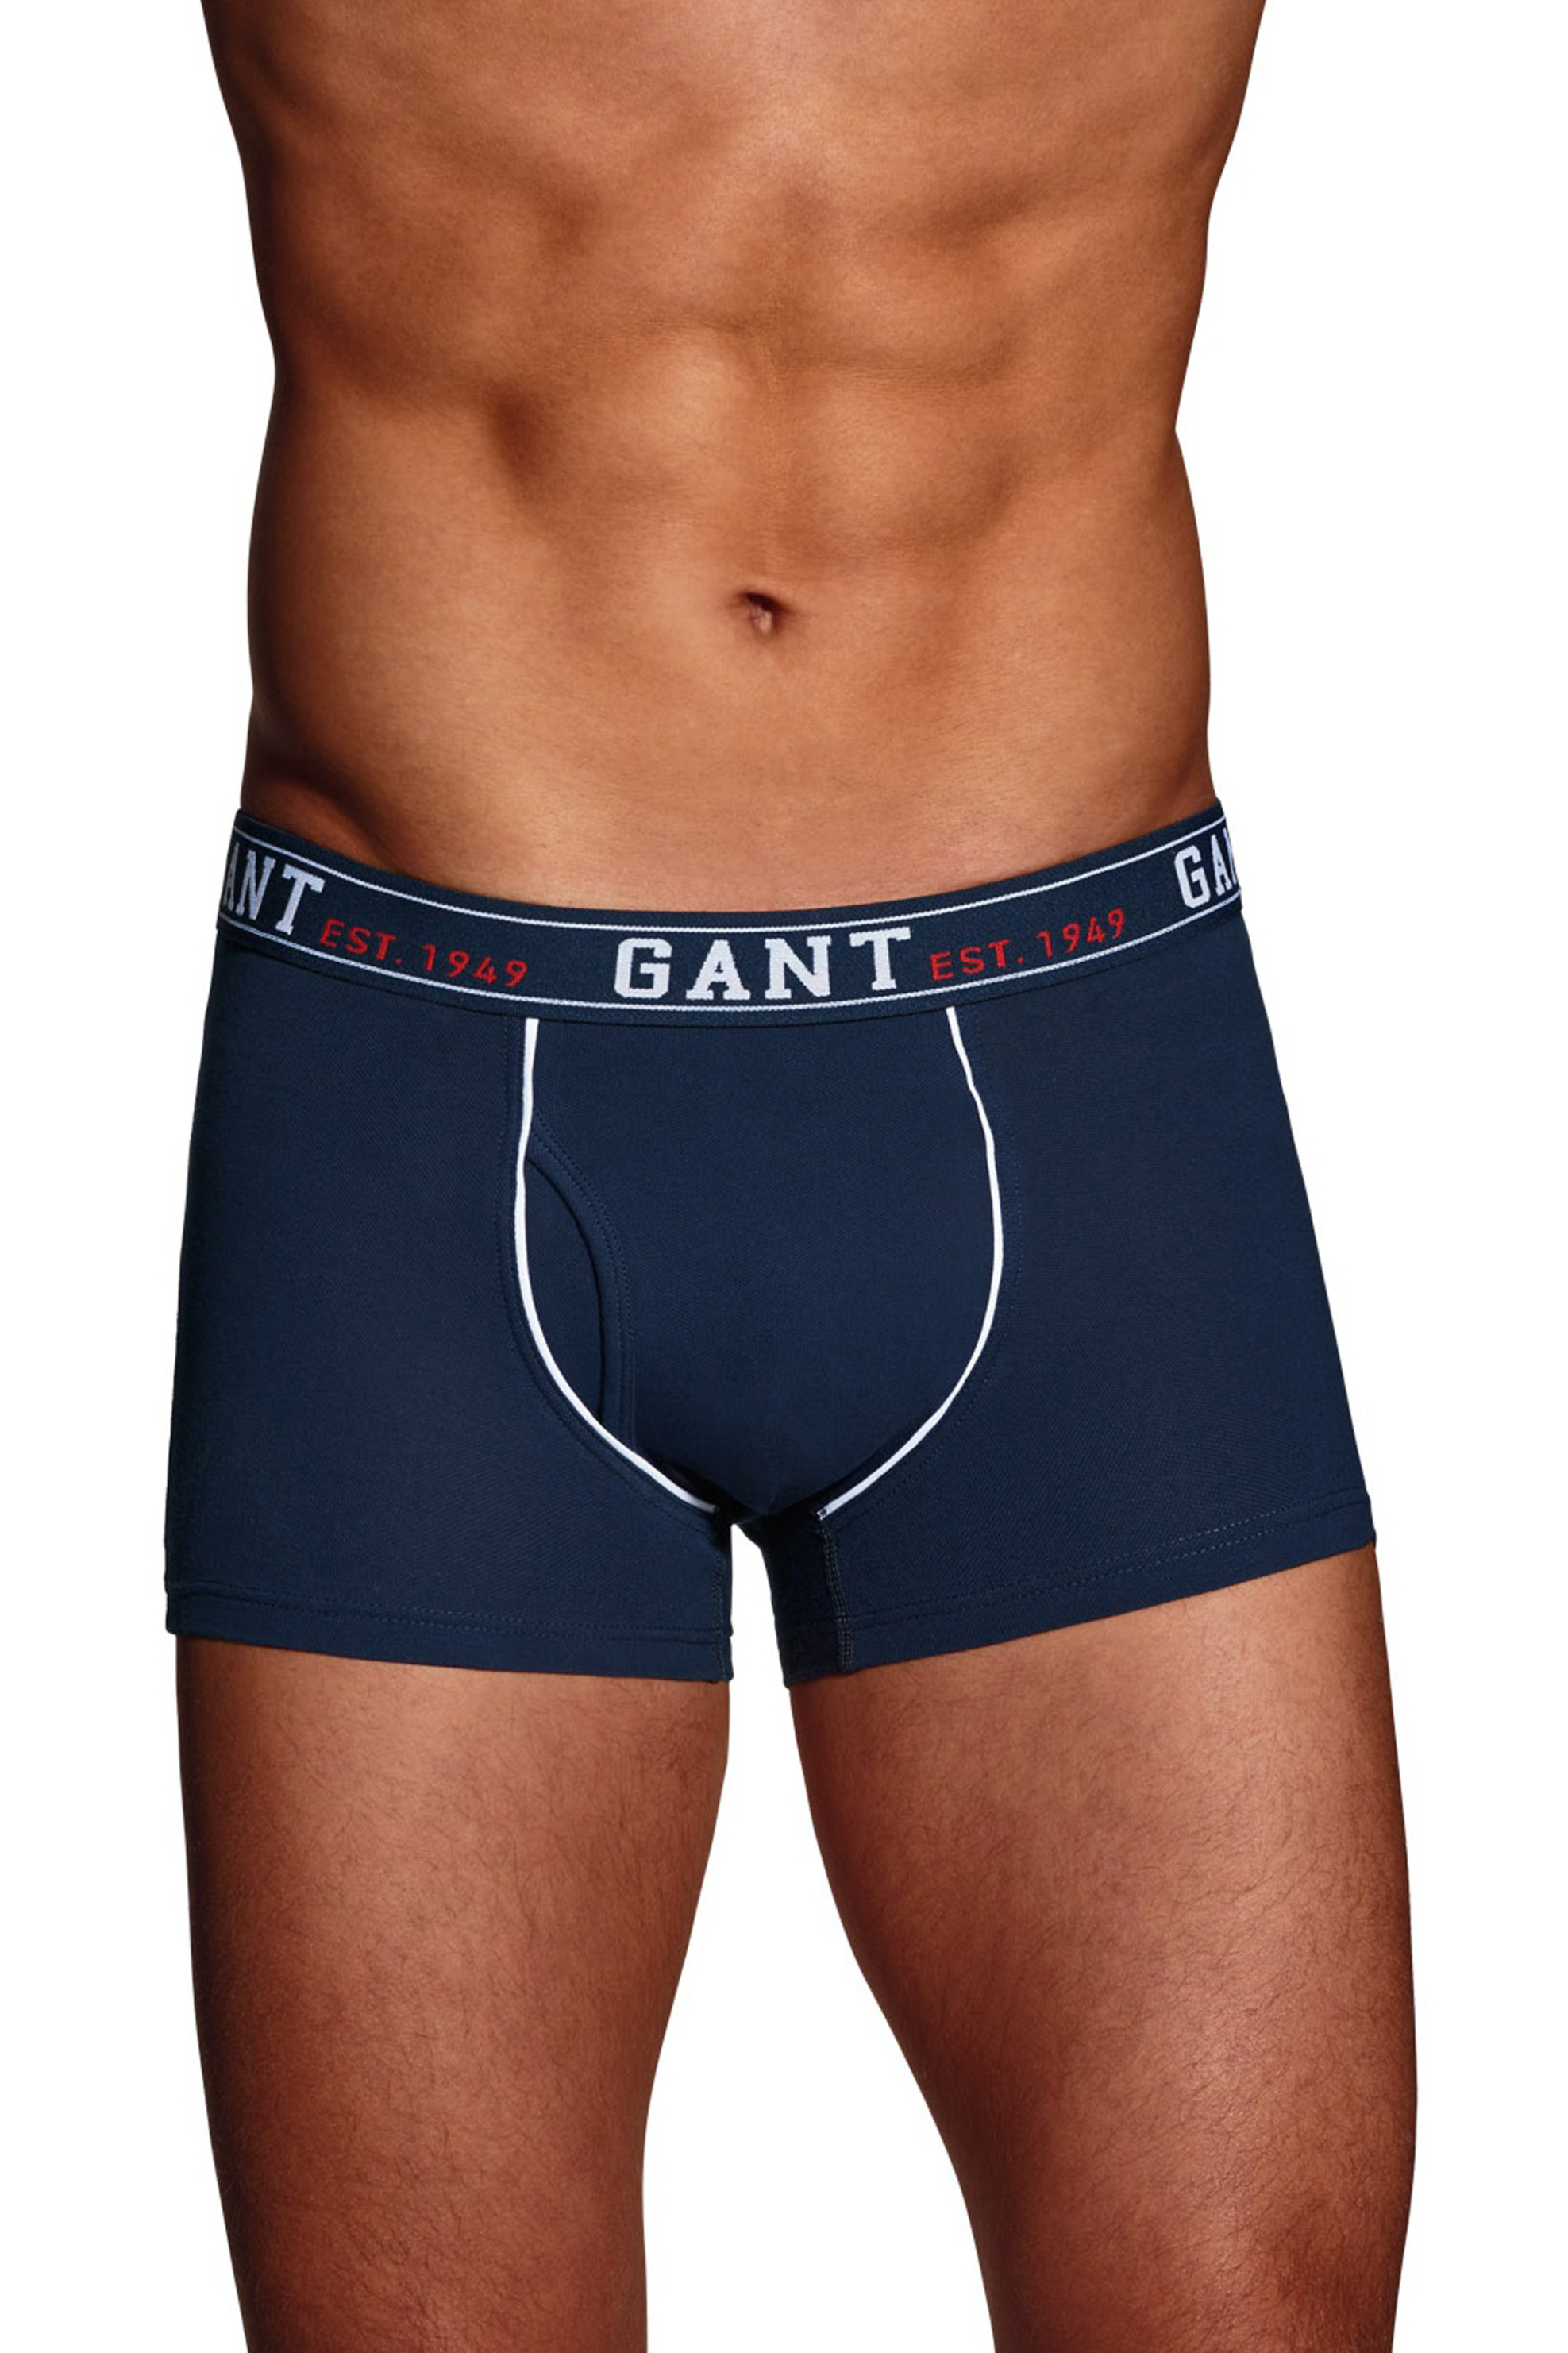 Άνδρας > ΡΟΥΧΑ > Εσώρουχα > Boxer Shorts Gant ανδρικό μποξεράκι - 1333 Μπλε Σκούρο